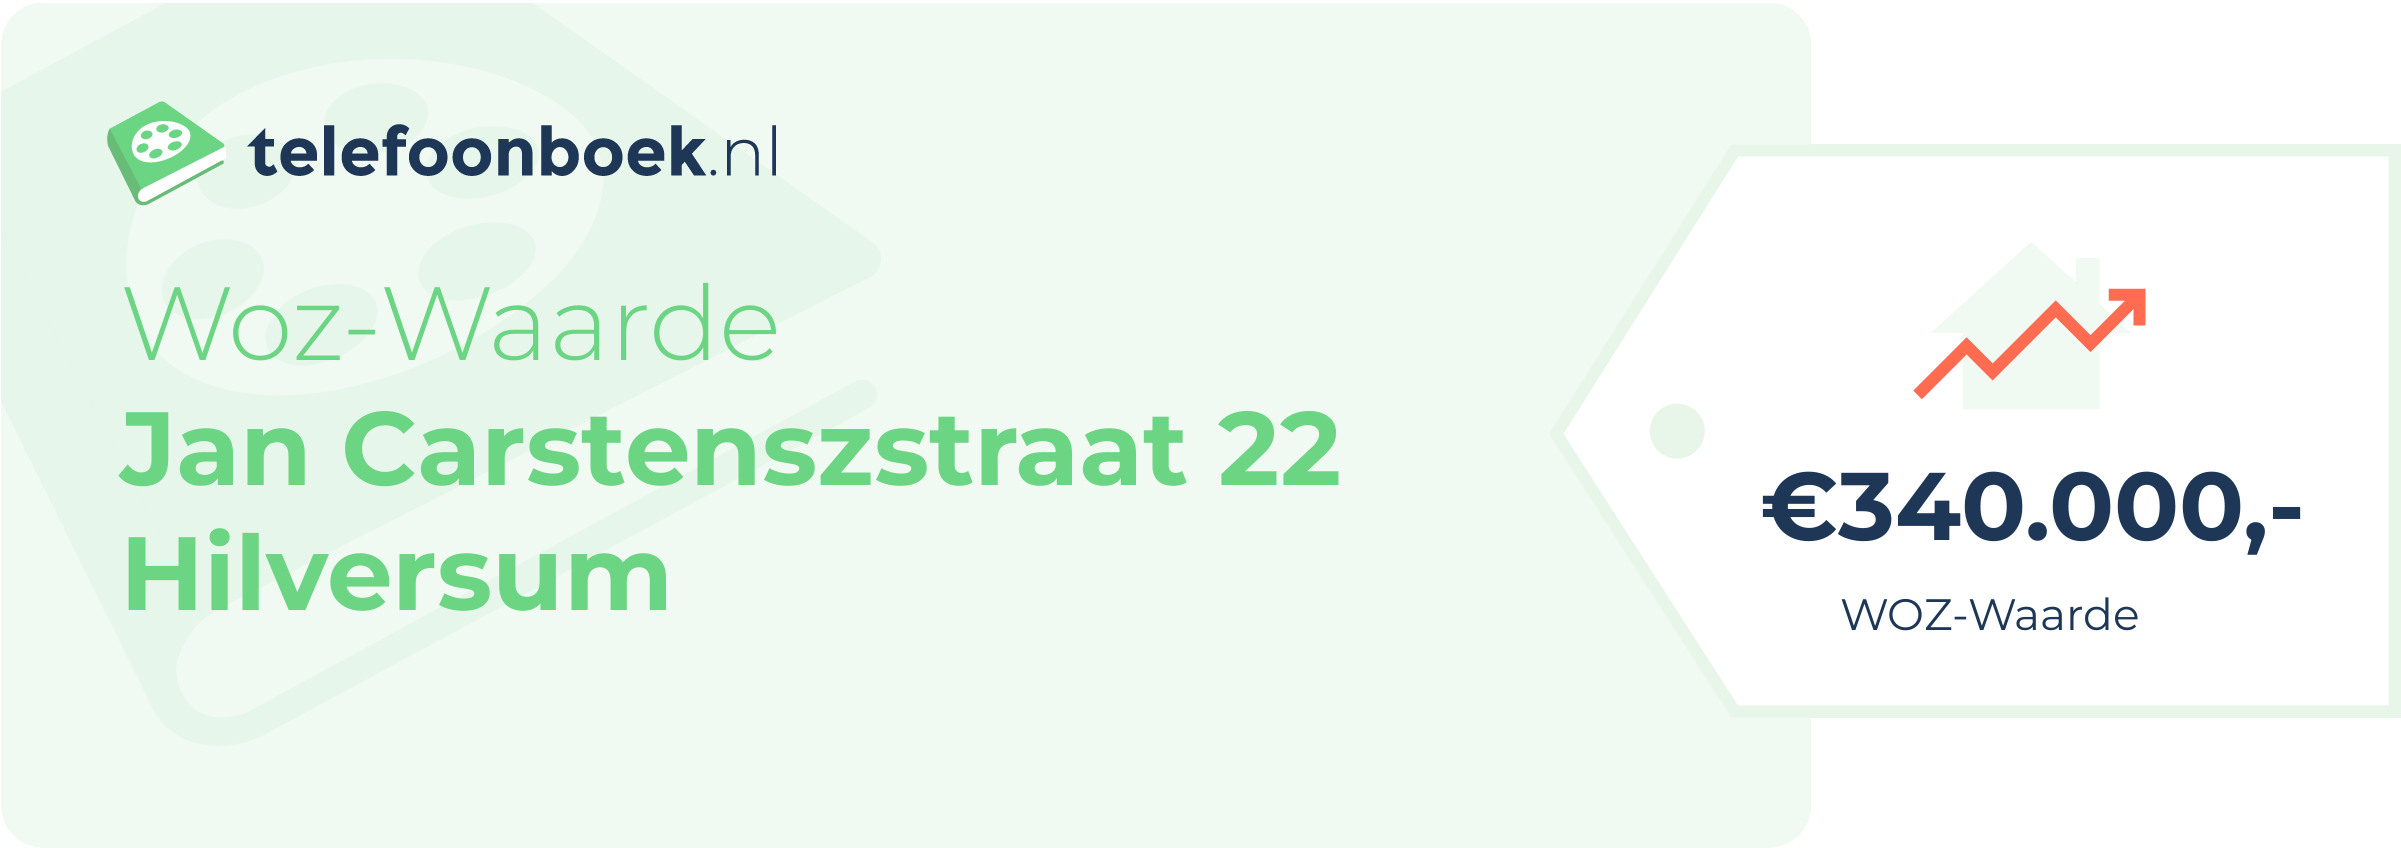 WOZ-waarde Jan Carstenszstraat 22 Hilversum